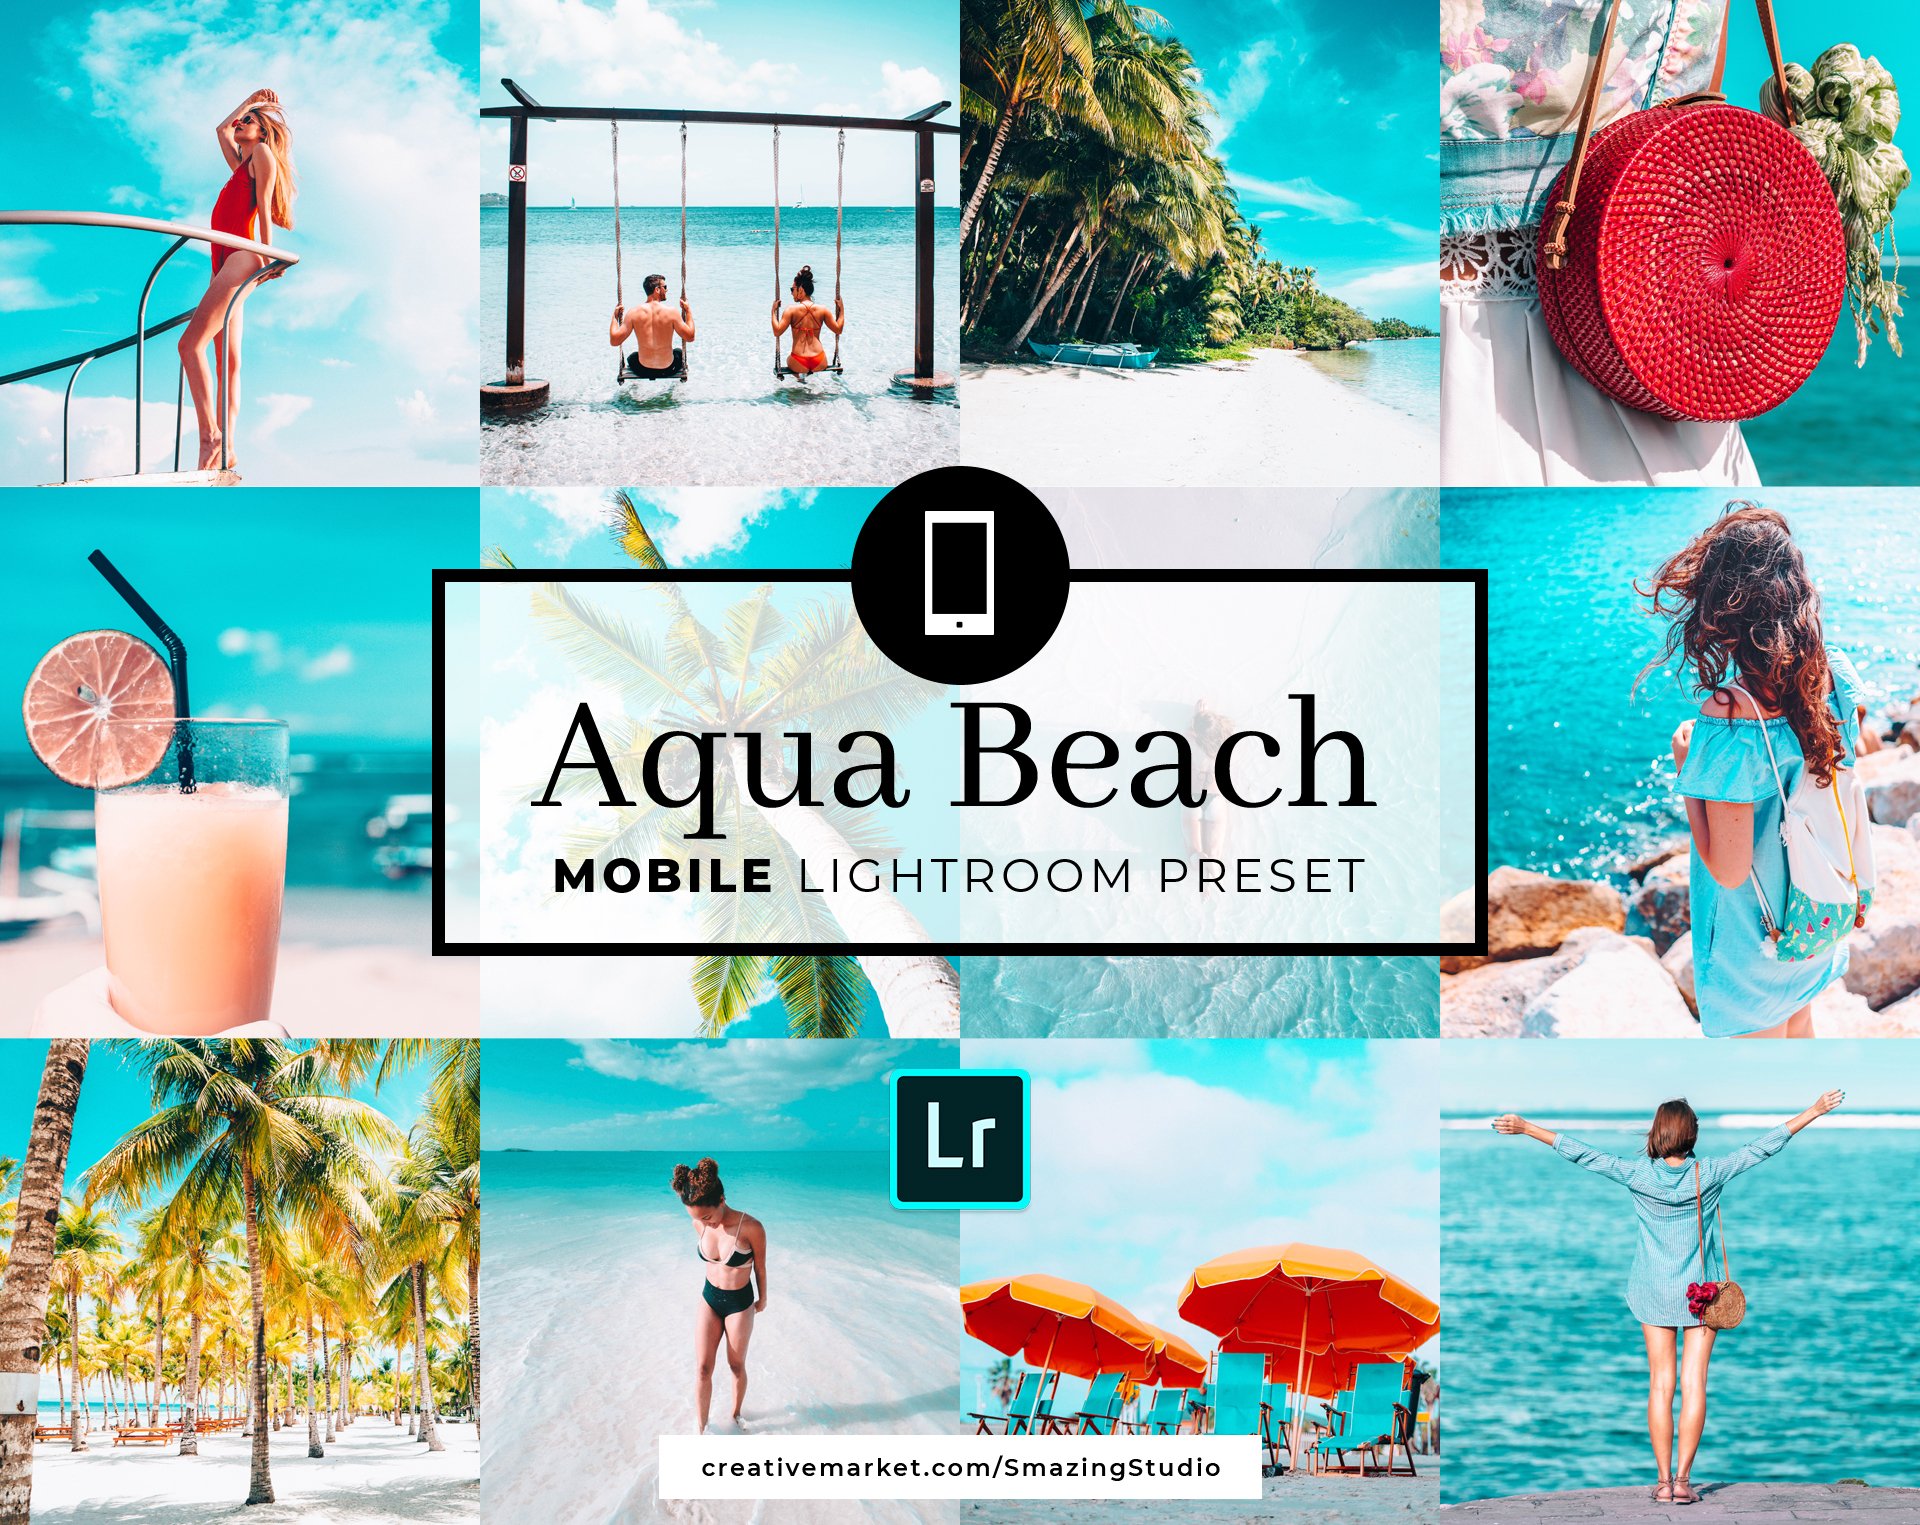 Mobile Lightroom Preset Aqua Beachcover image.